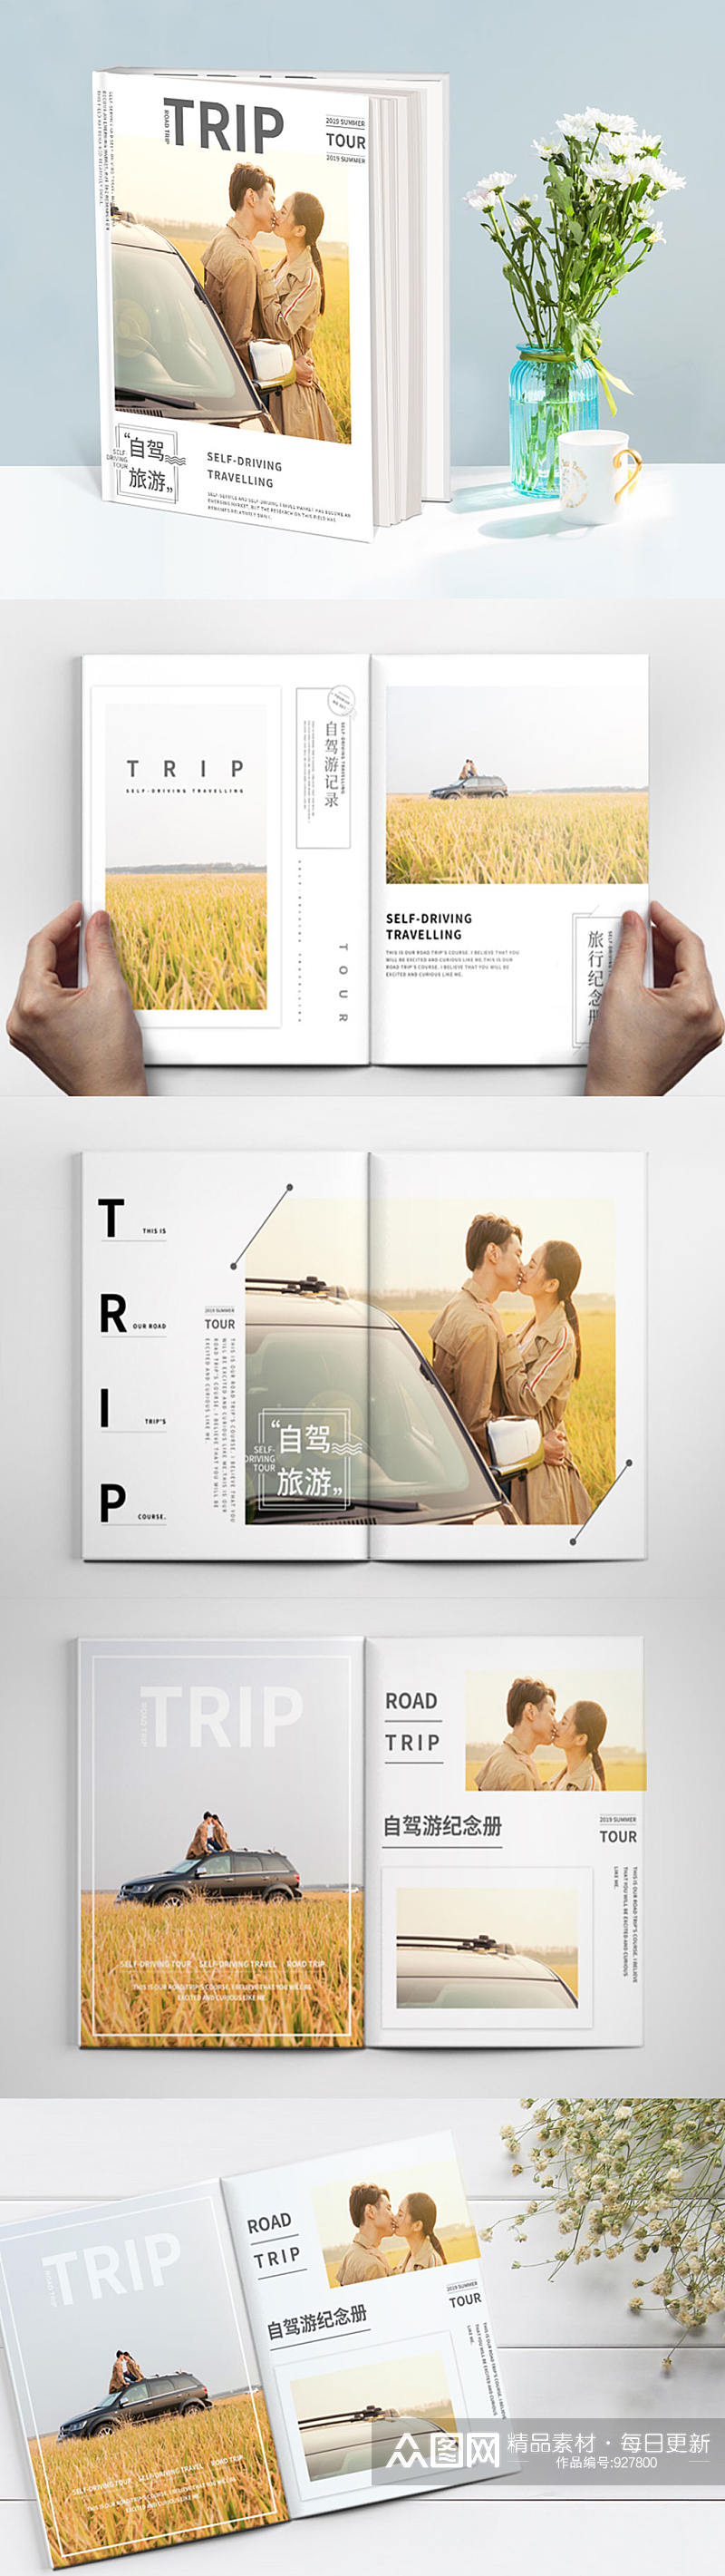 自驾旅游日式旅行相册设计素材